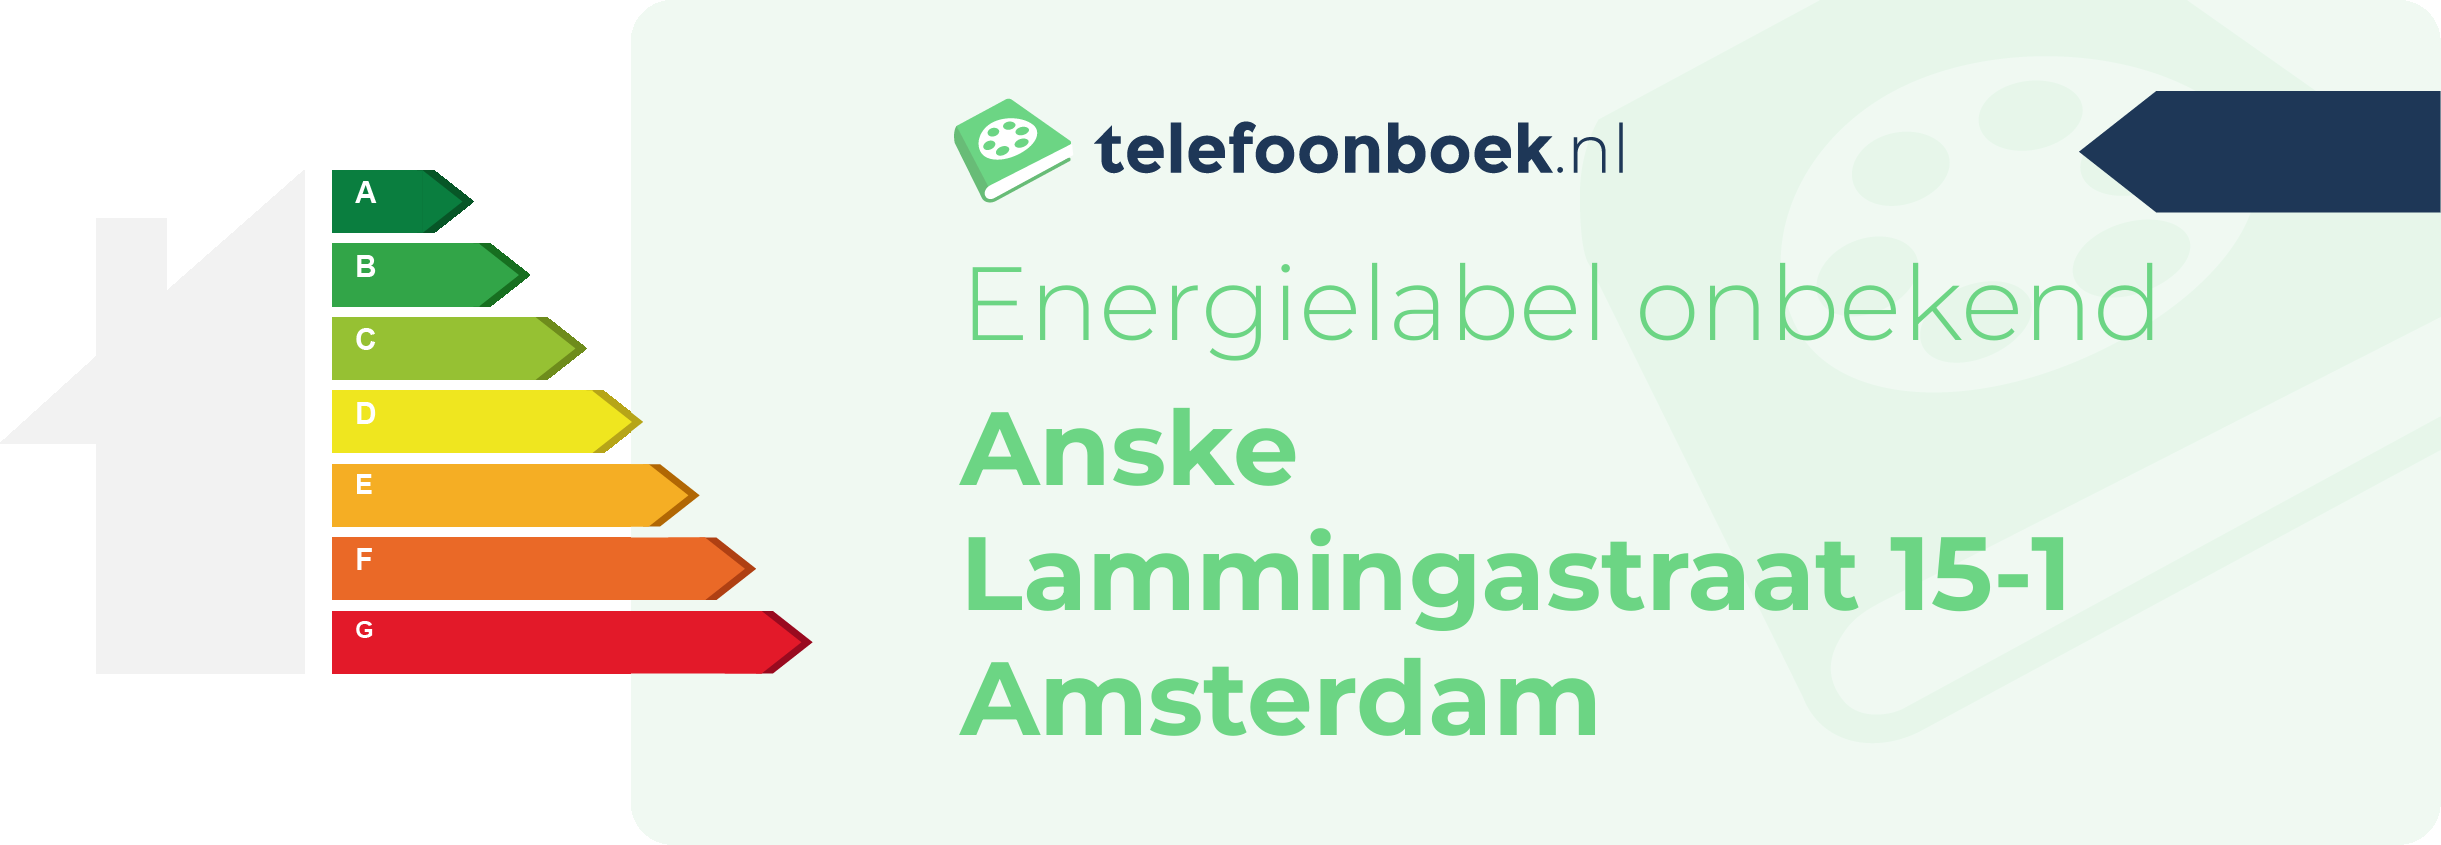 Energielabel Anske Lammingastraat 15-1 Amsterdam